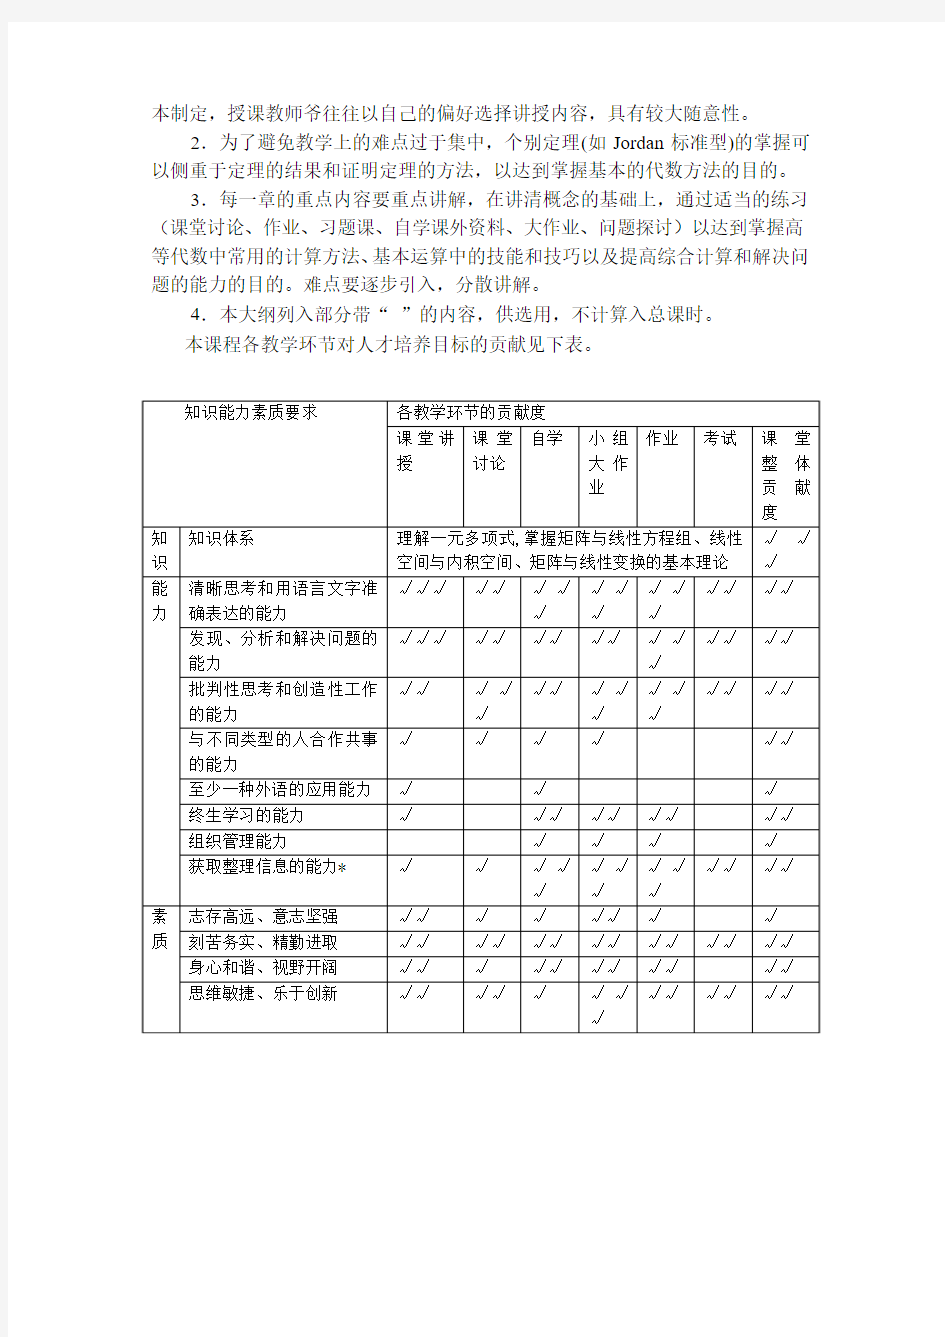 高等代数与解析几何课程教学大纲-上海交通大学数学系